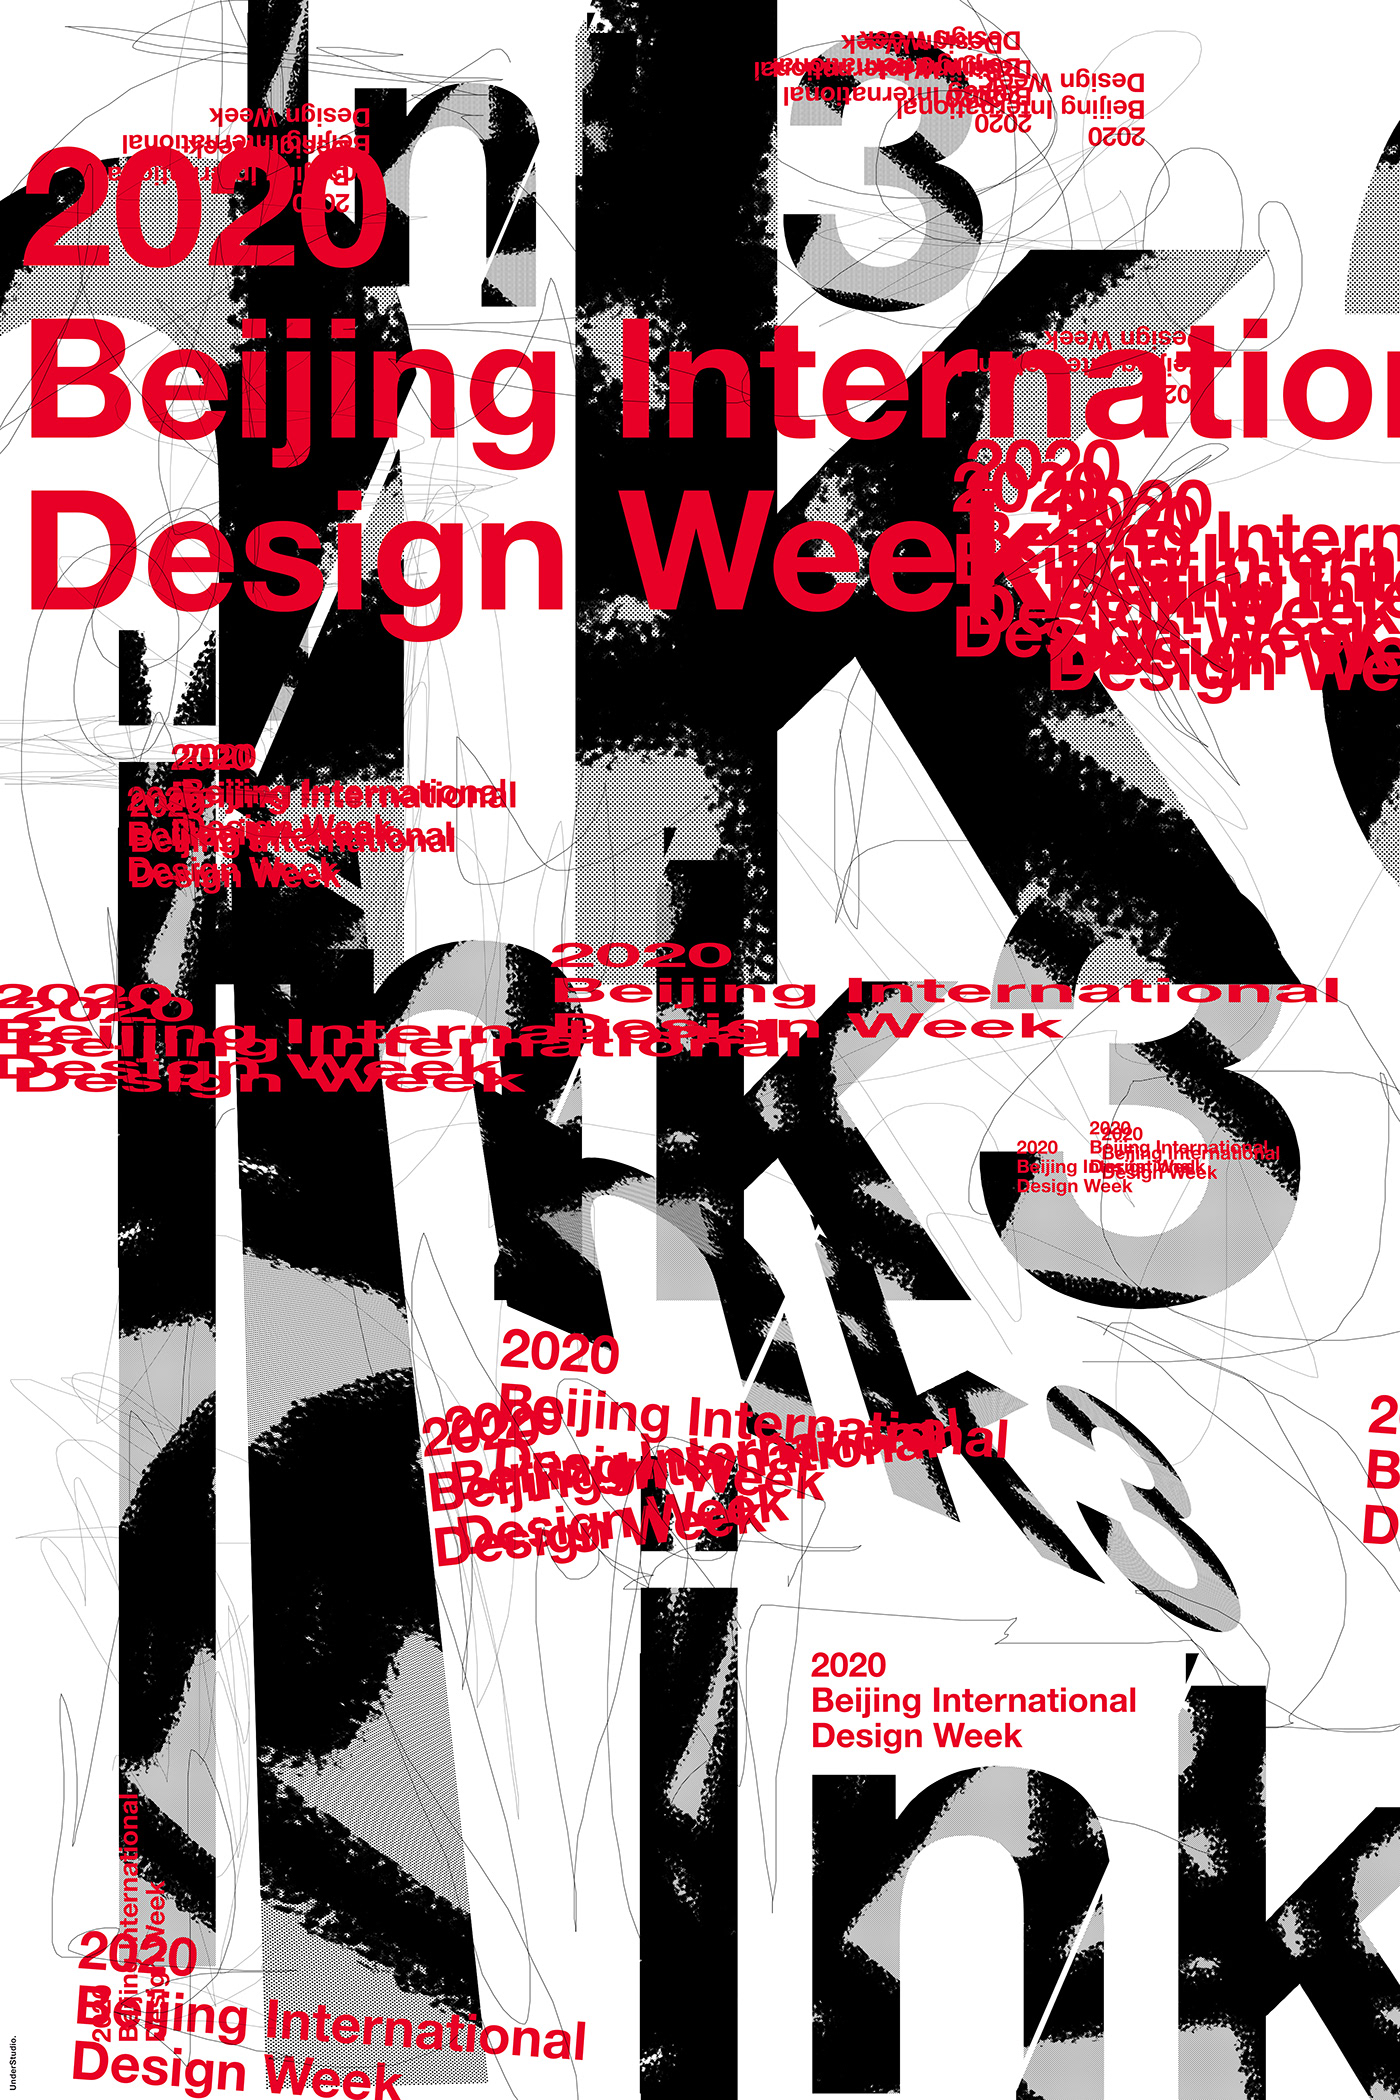 beijing design week Francesco Mazzenga INK 3 International Ink Design Poster Exhibition 2020